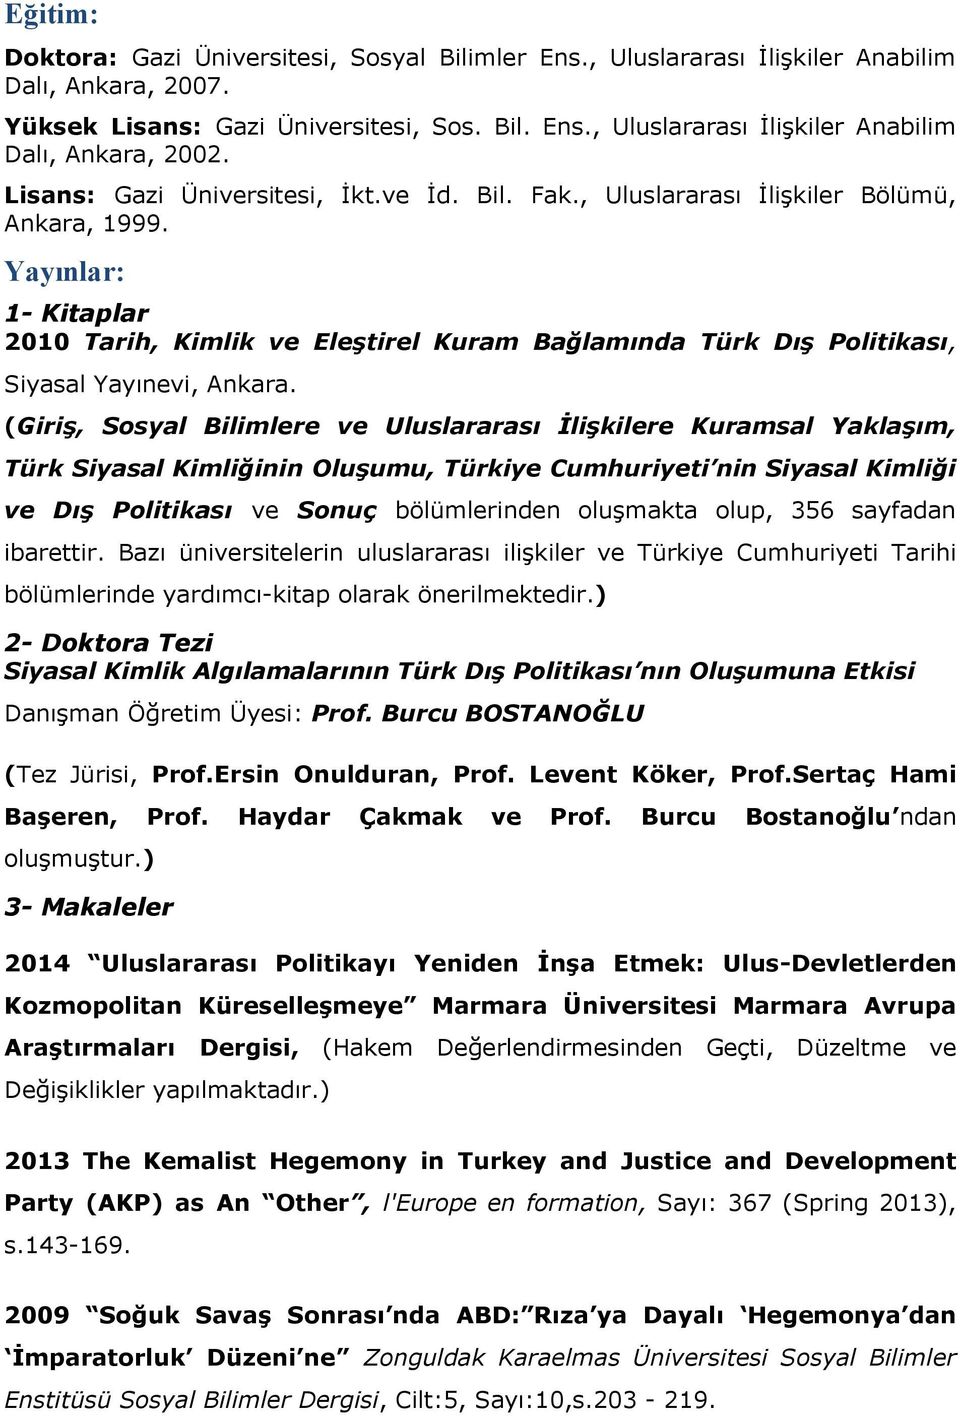 Yayınlar: 1- Kitaplar 2010 Tarih, Kimlik ve Eleştirel Kuram Bağlamında Türk Dış Politikası, Siyasal Yayınevi, Ankara.